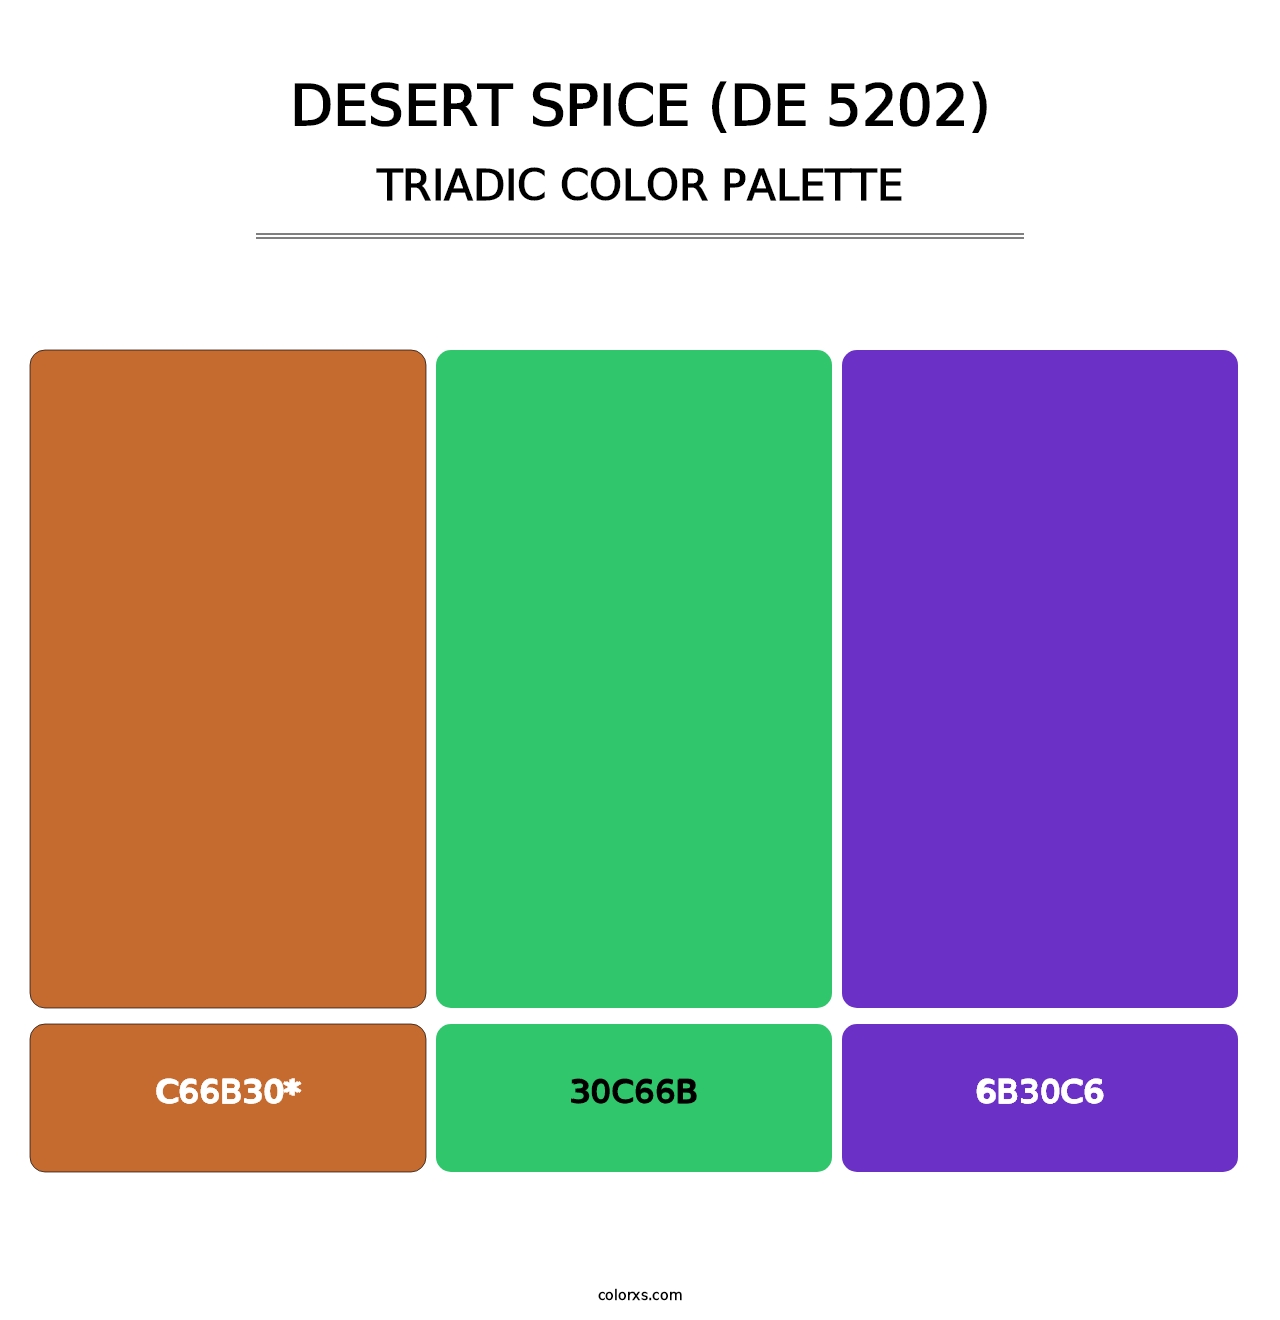 Desert Spice (DE 5202) - Triadic Color Palette